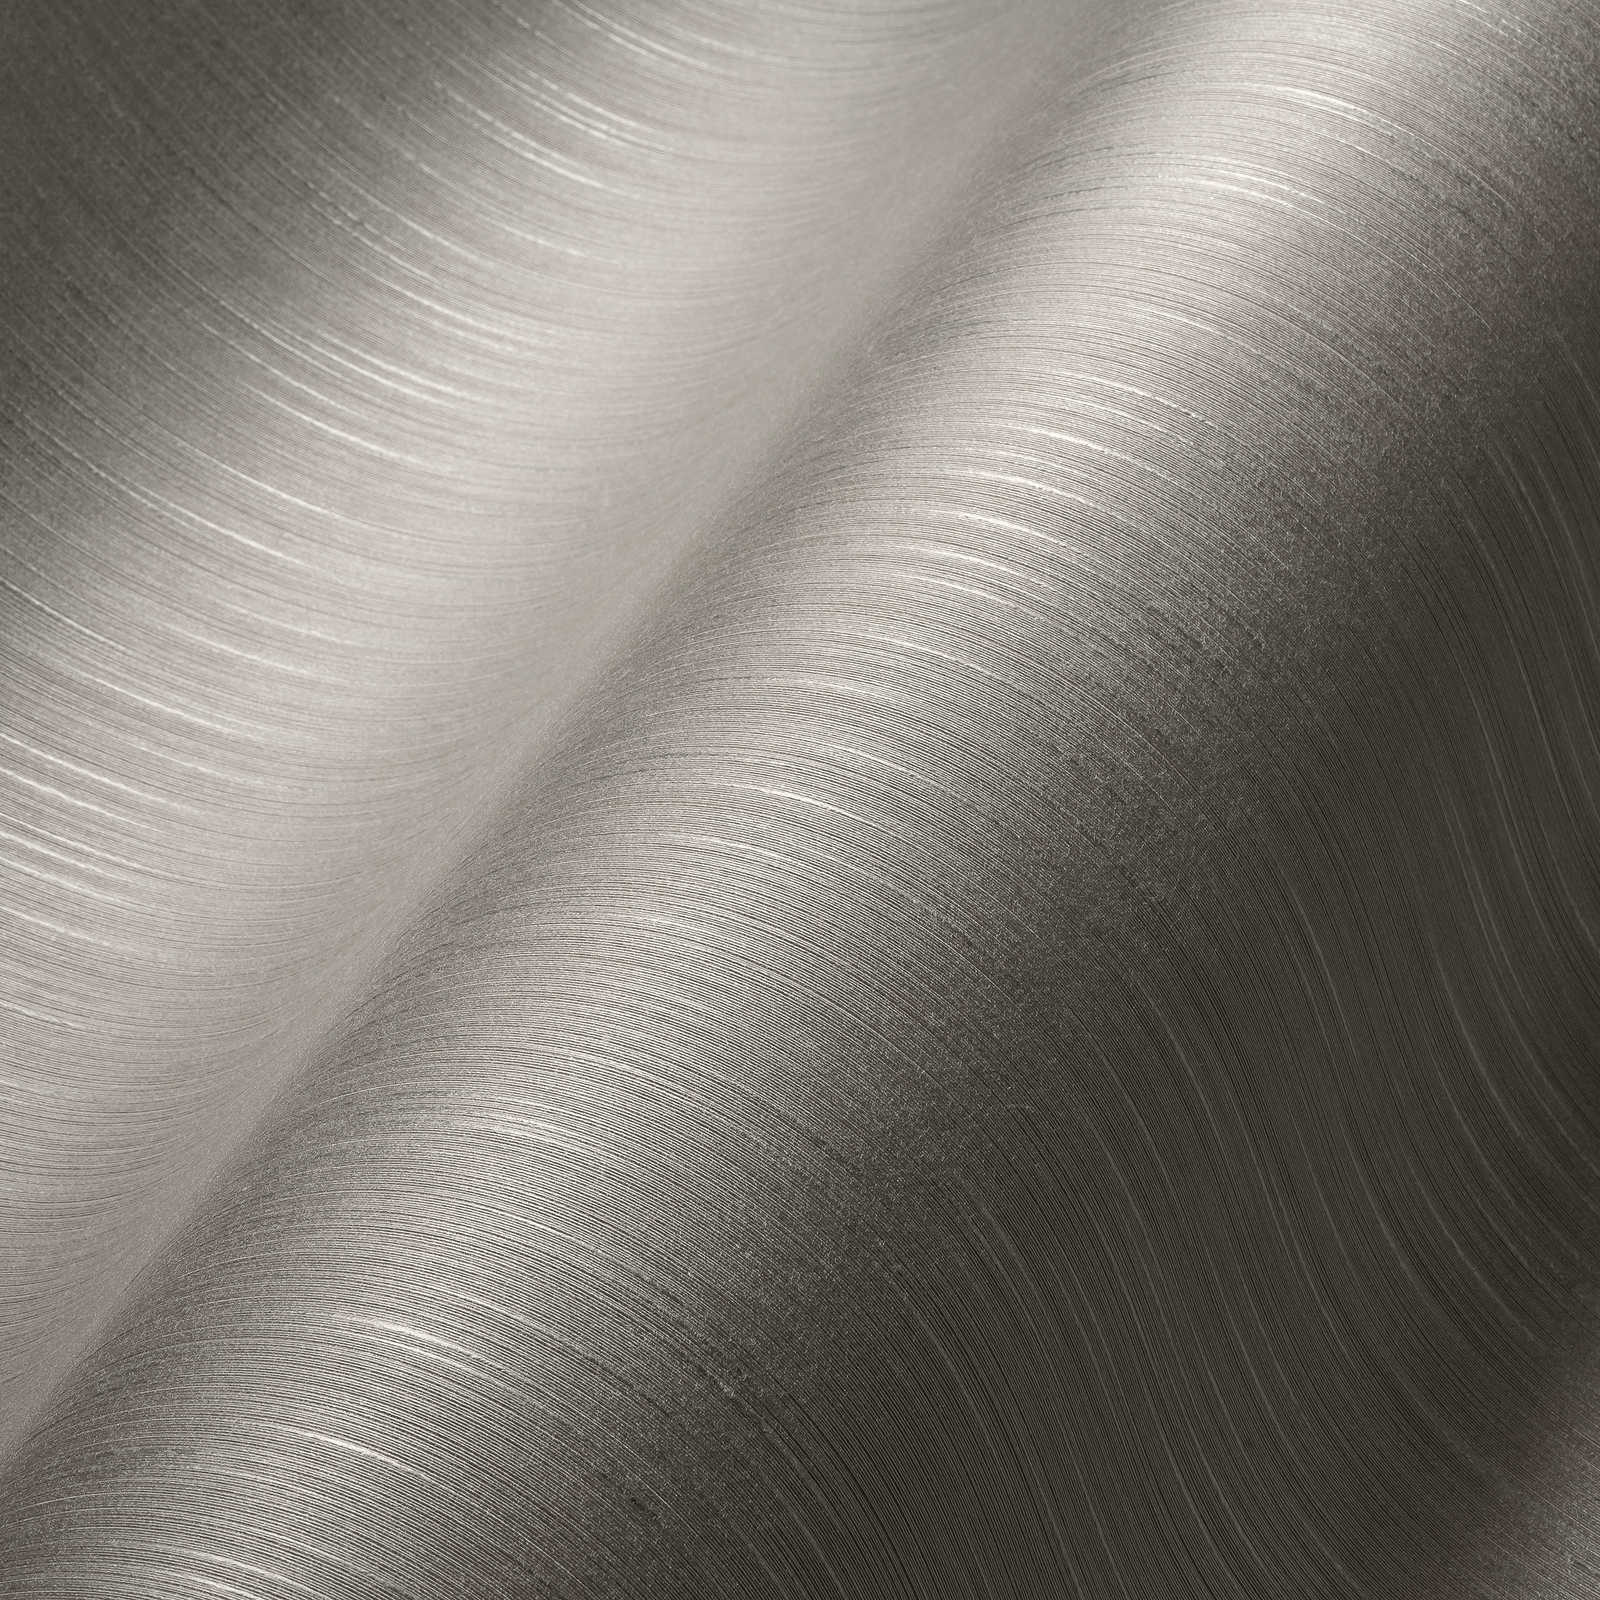             Tapete Grau mit meliertem Textileffekt & seidenmatt Finish
        